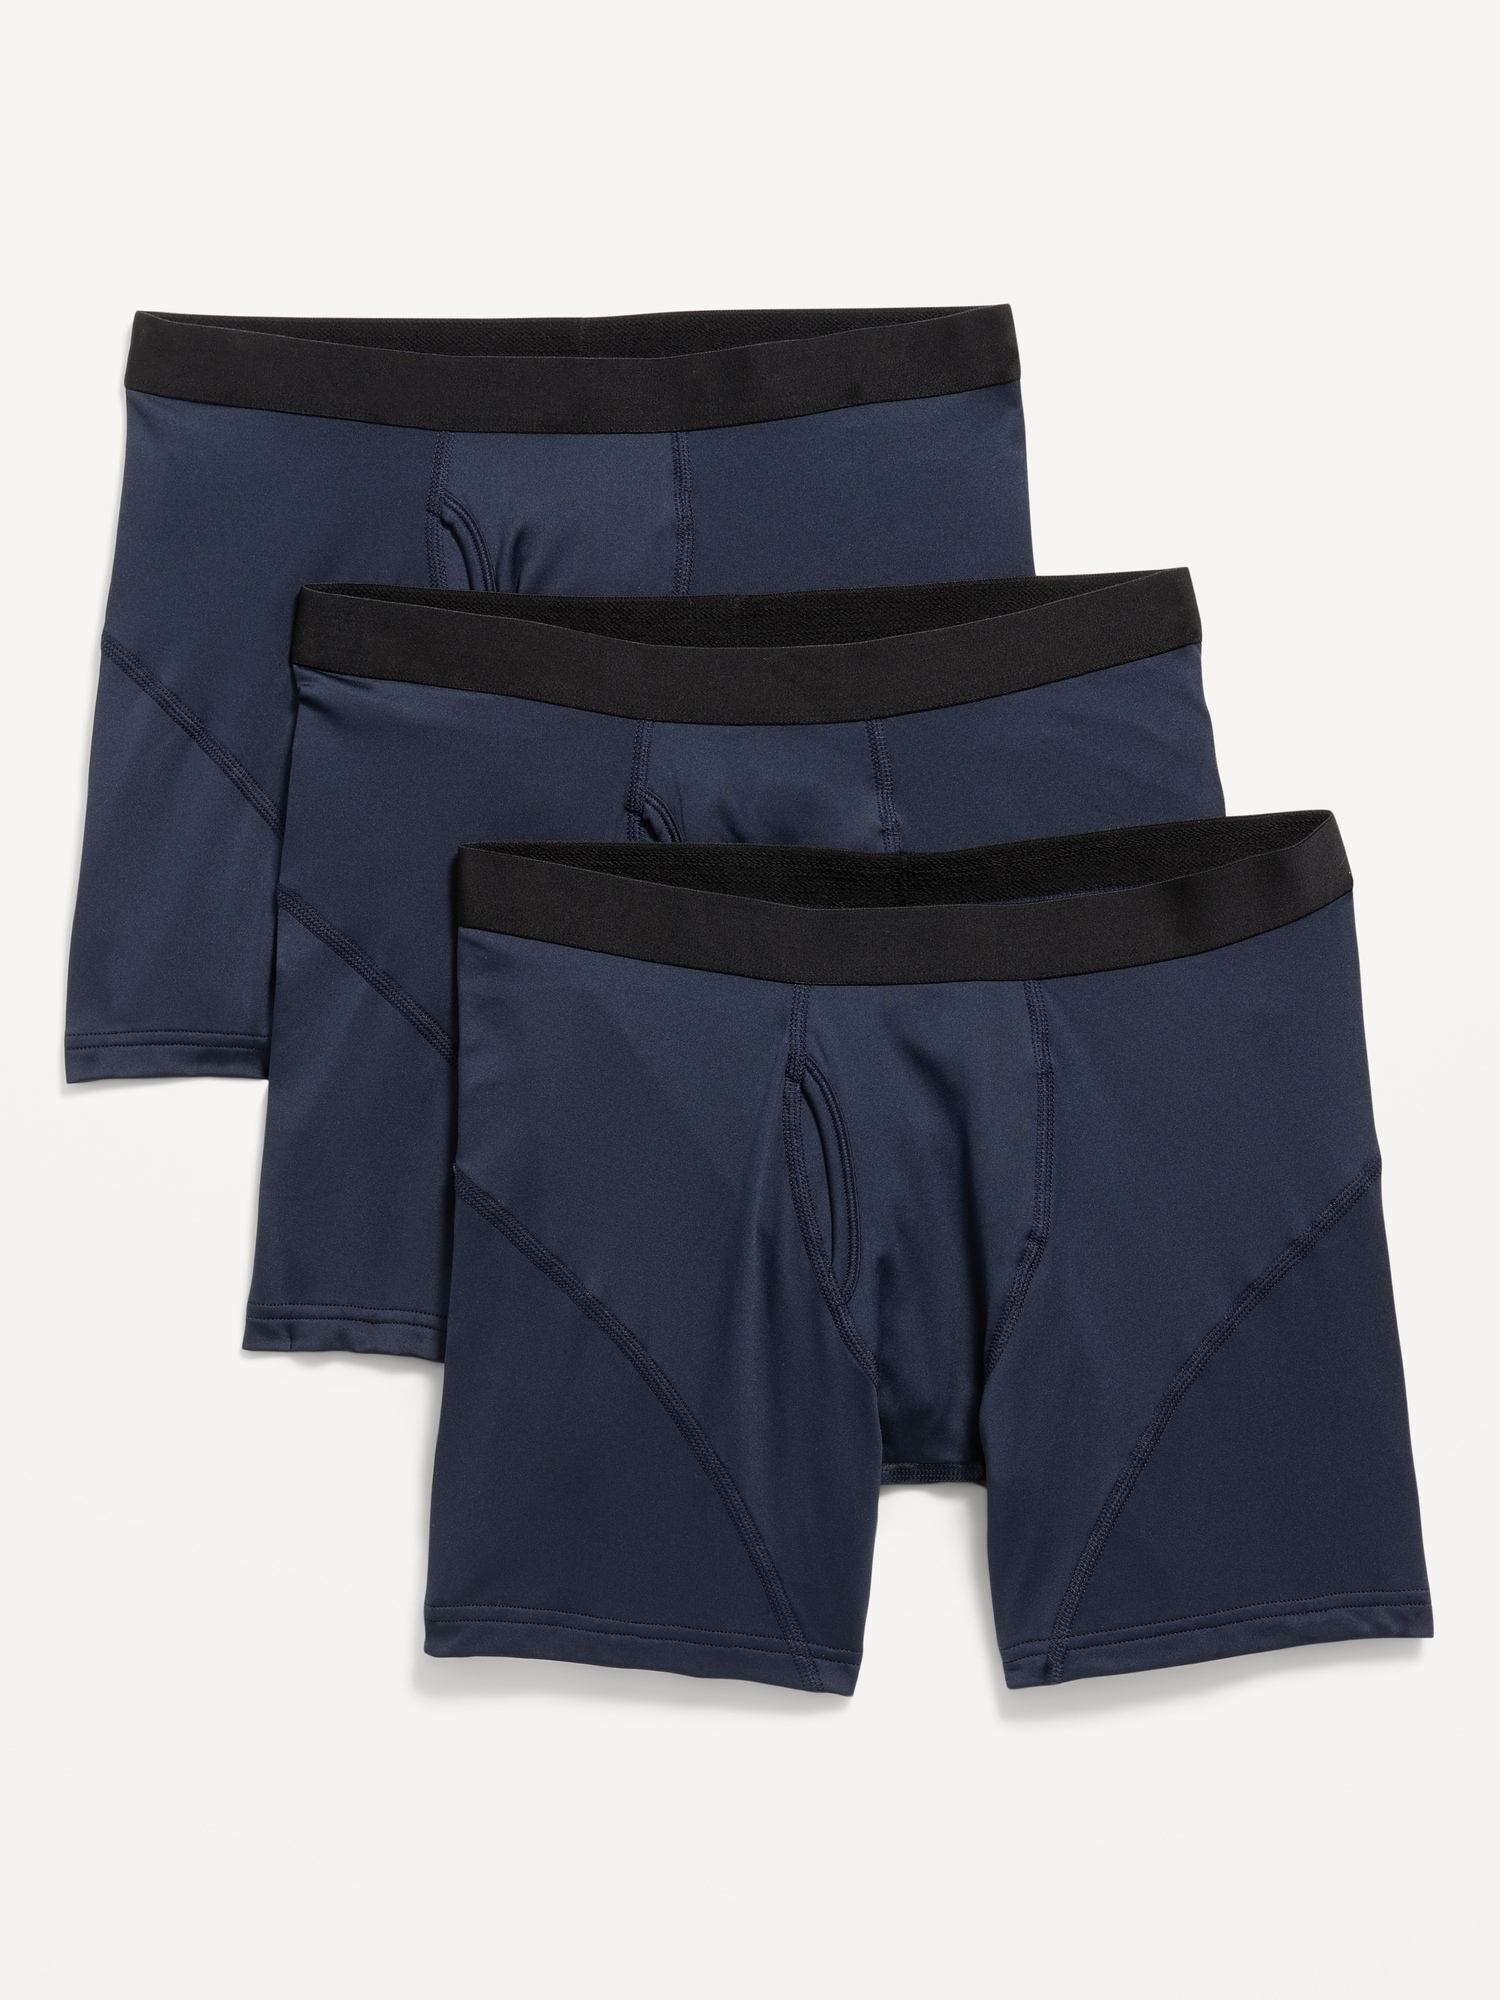 FRIGO Navy Blue Adjustable Pouch 3 Trunk Underwear New in Box